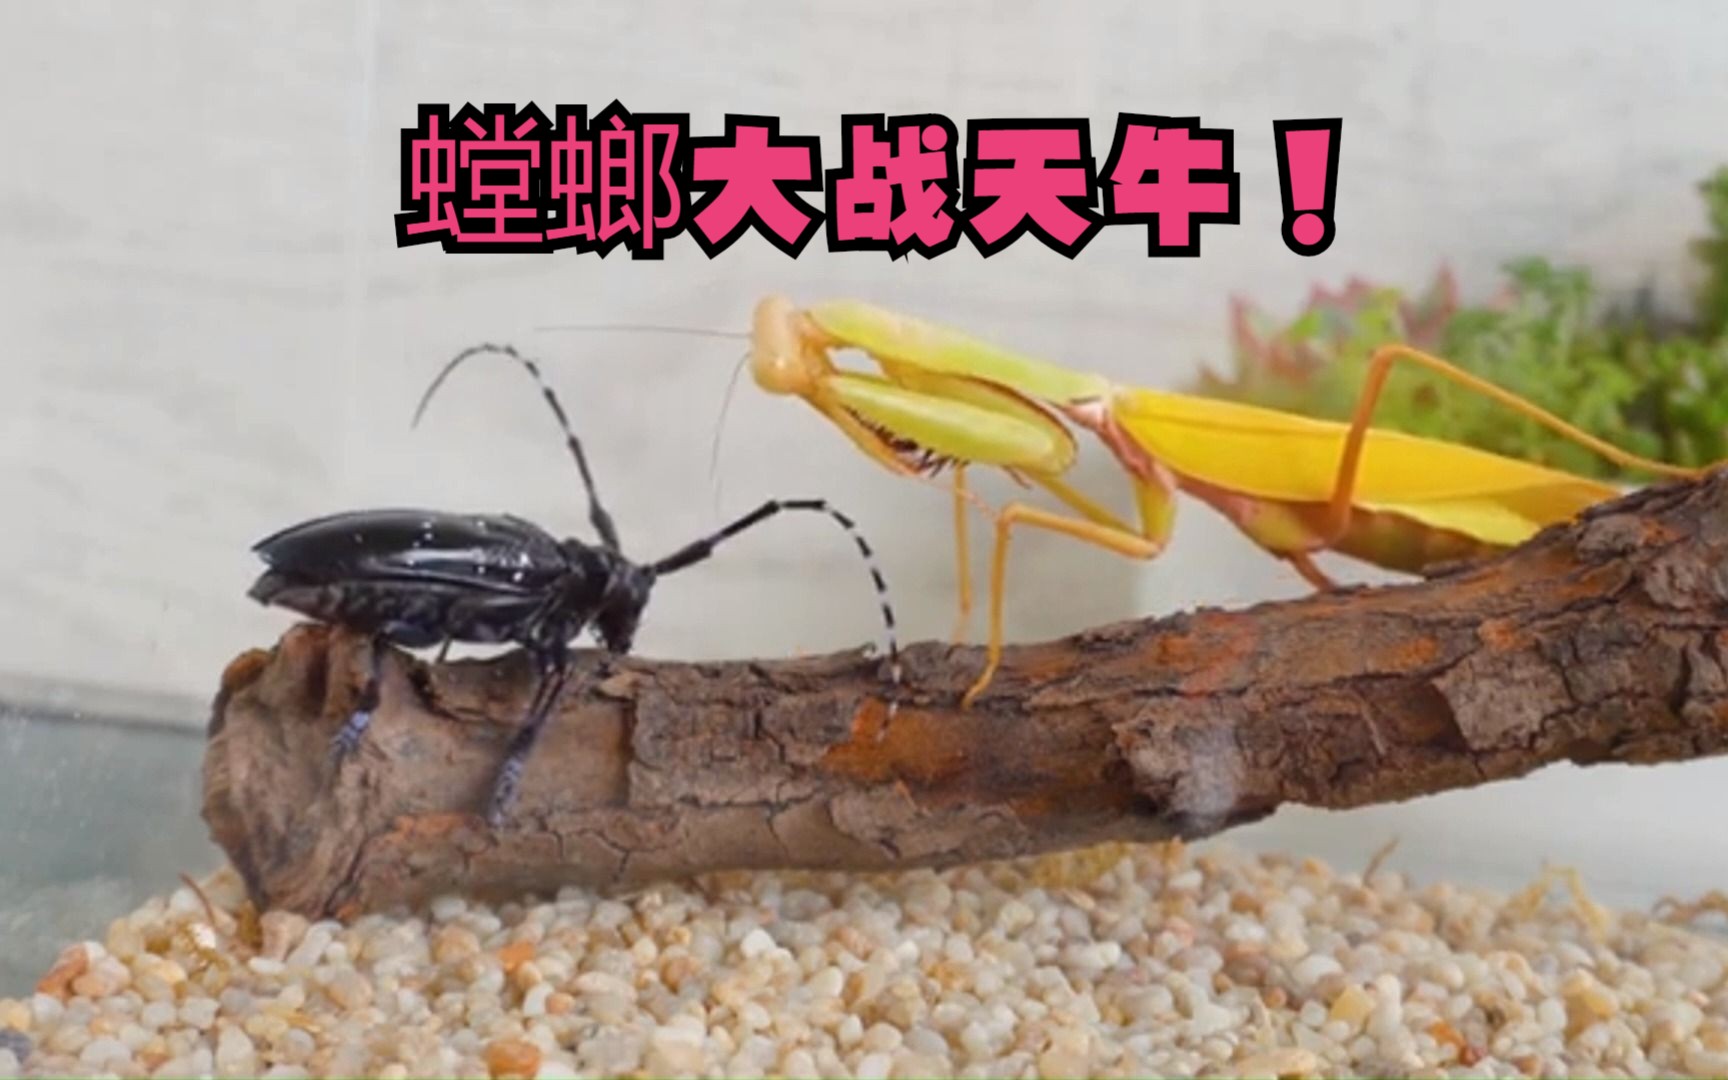 虫皇帝螳螂虾vs大田鳖图片